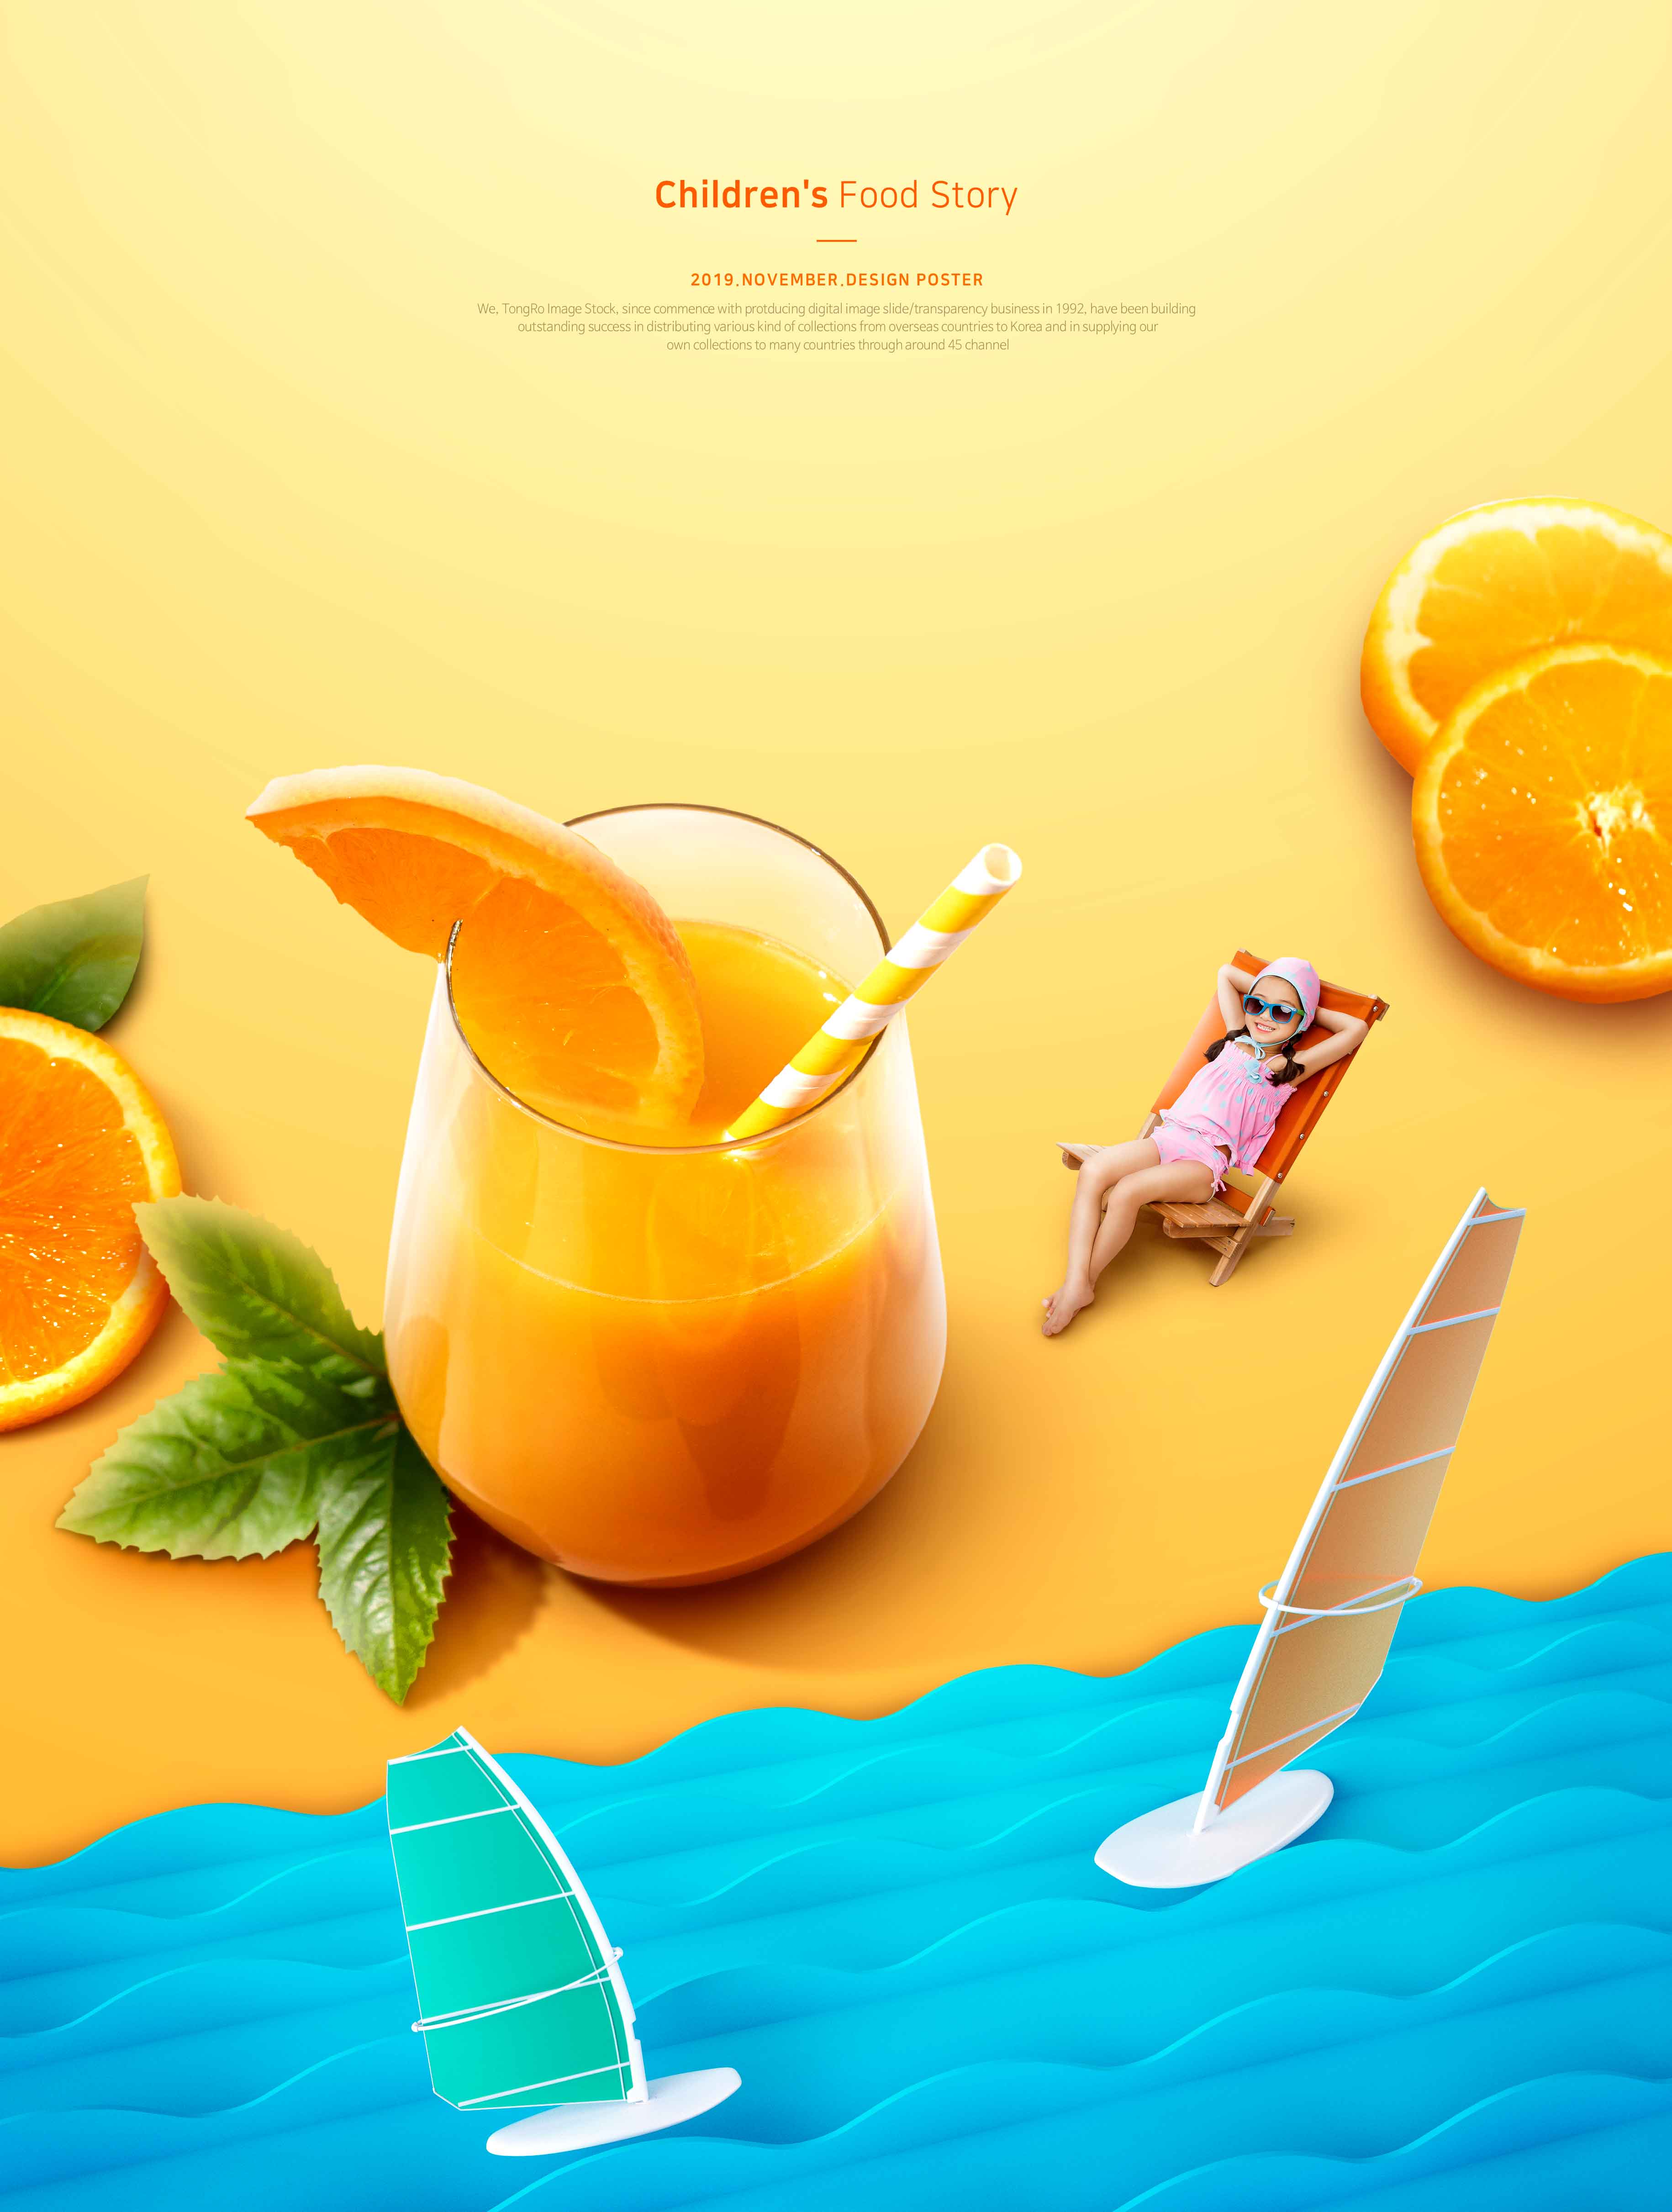 儿童食品故事夏季橙汁推广海报PSD素材非凡图库精选模板插图